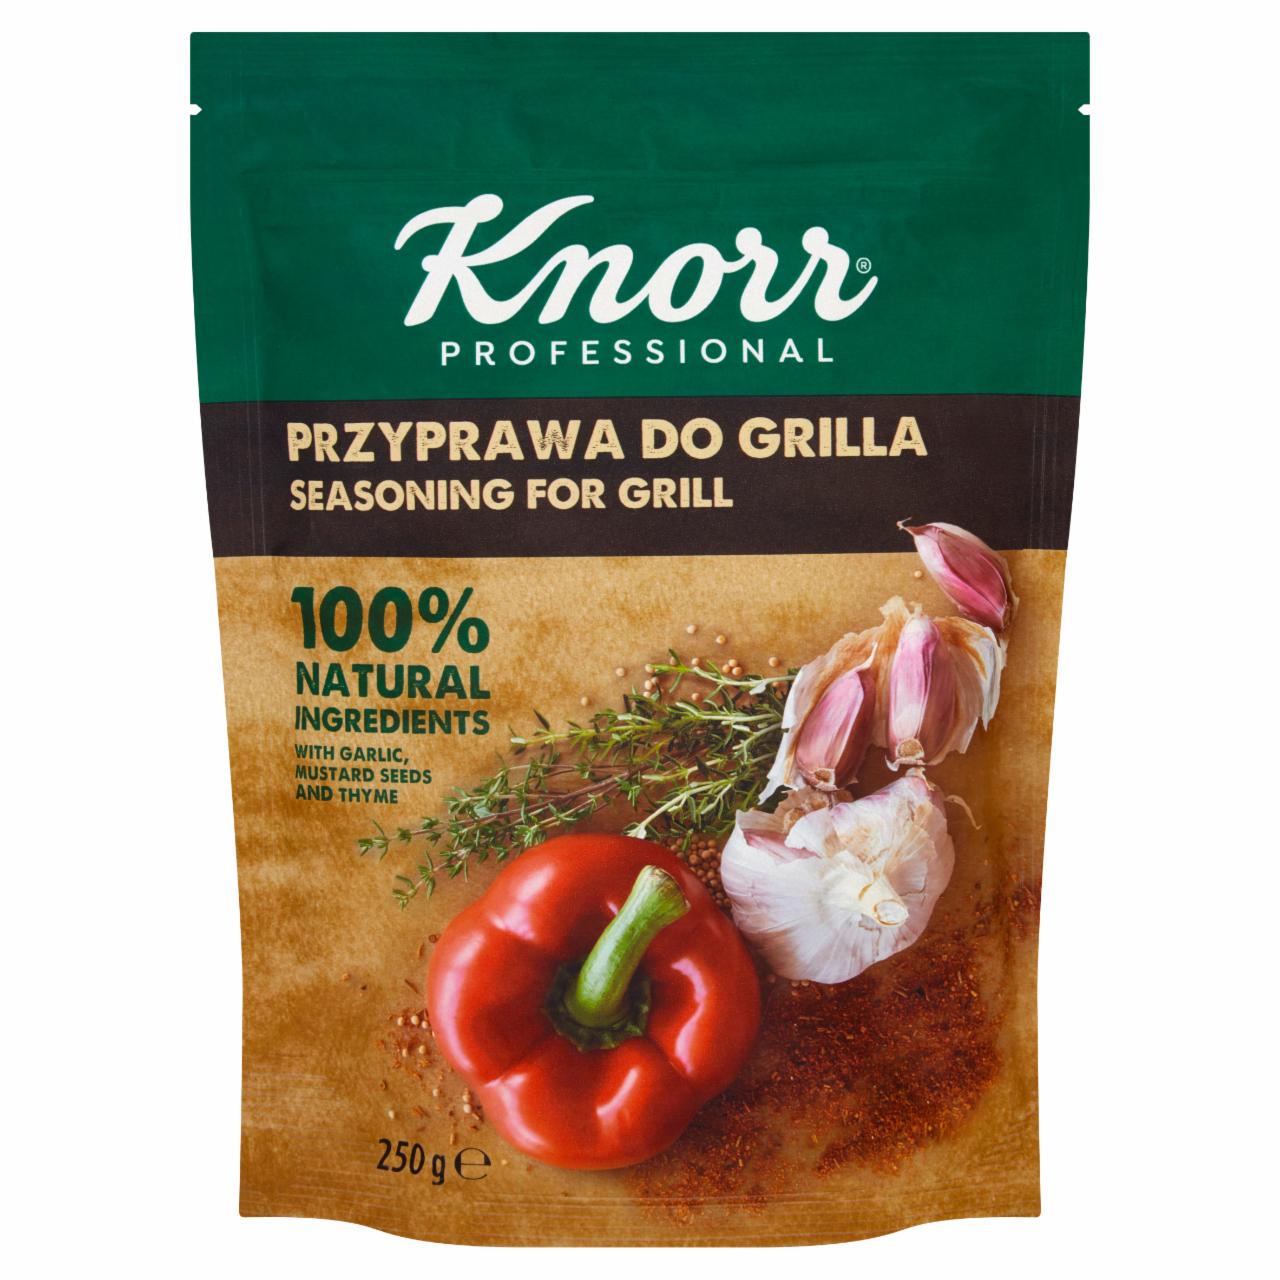 Zdjęcia - Knorr Professional Przyprawa do grilla 250 g